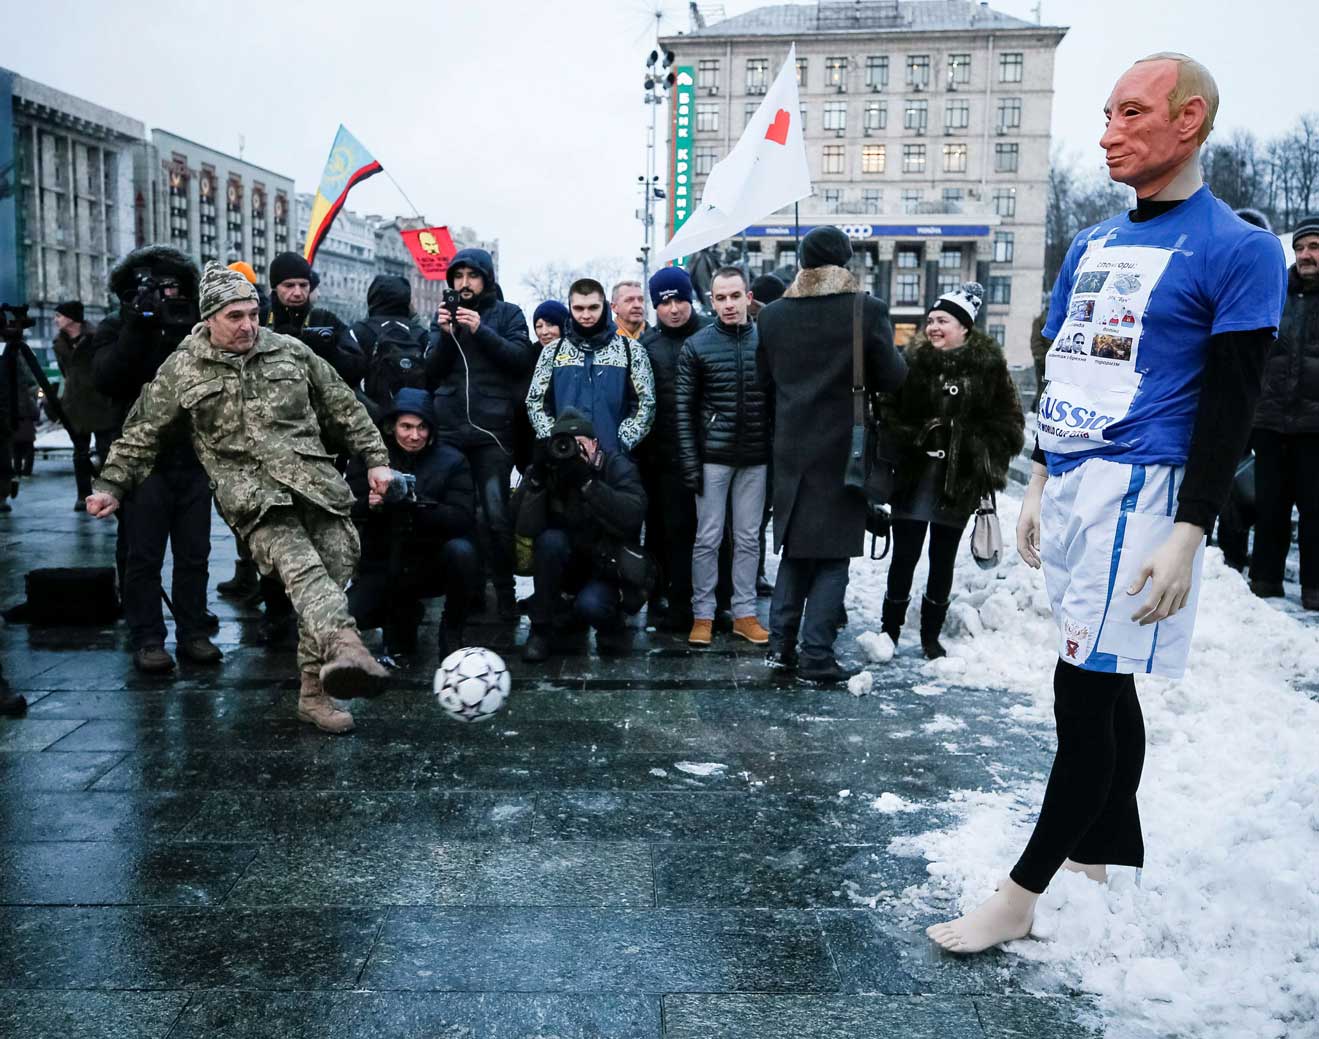 لاعب في المنتخب الاوكراني يسدد الكرة في اتجاه دمية تجسد فلاديمير بوتين اثناء مسيرة ضد استضافة روسيا لكأس العالم 